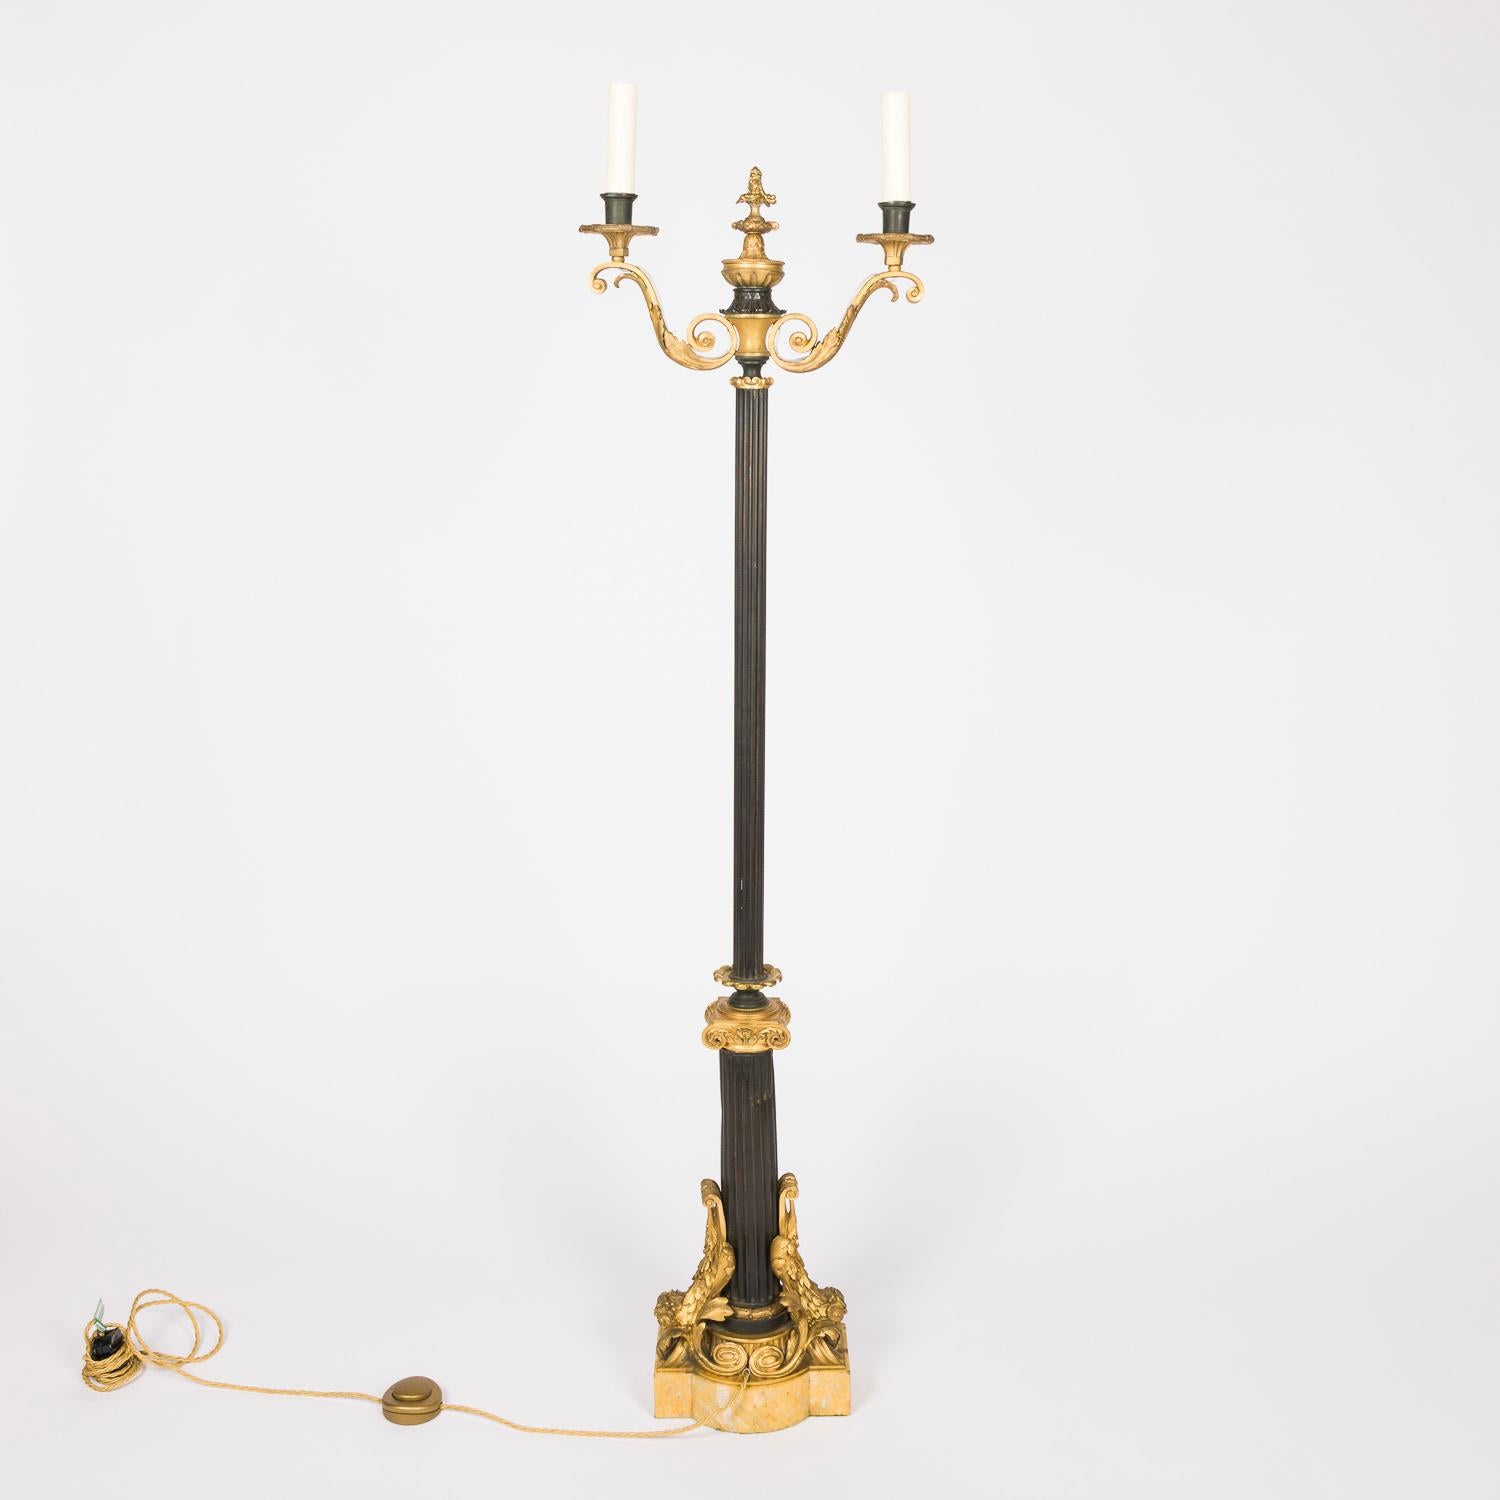 Lampe standard néo-classique française en bronze doré, tôle et marbre de Sienne à deux bras.

Socle en marbre lesté.

Recâblage et test.